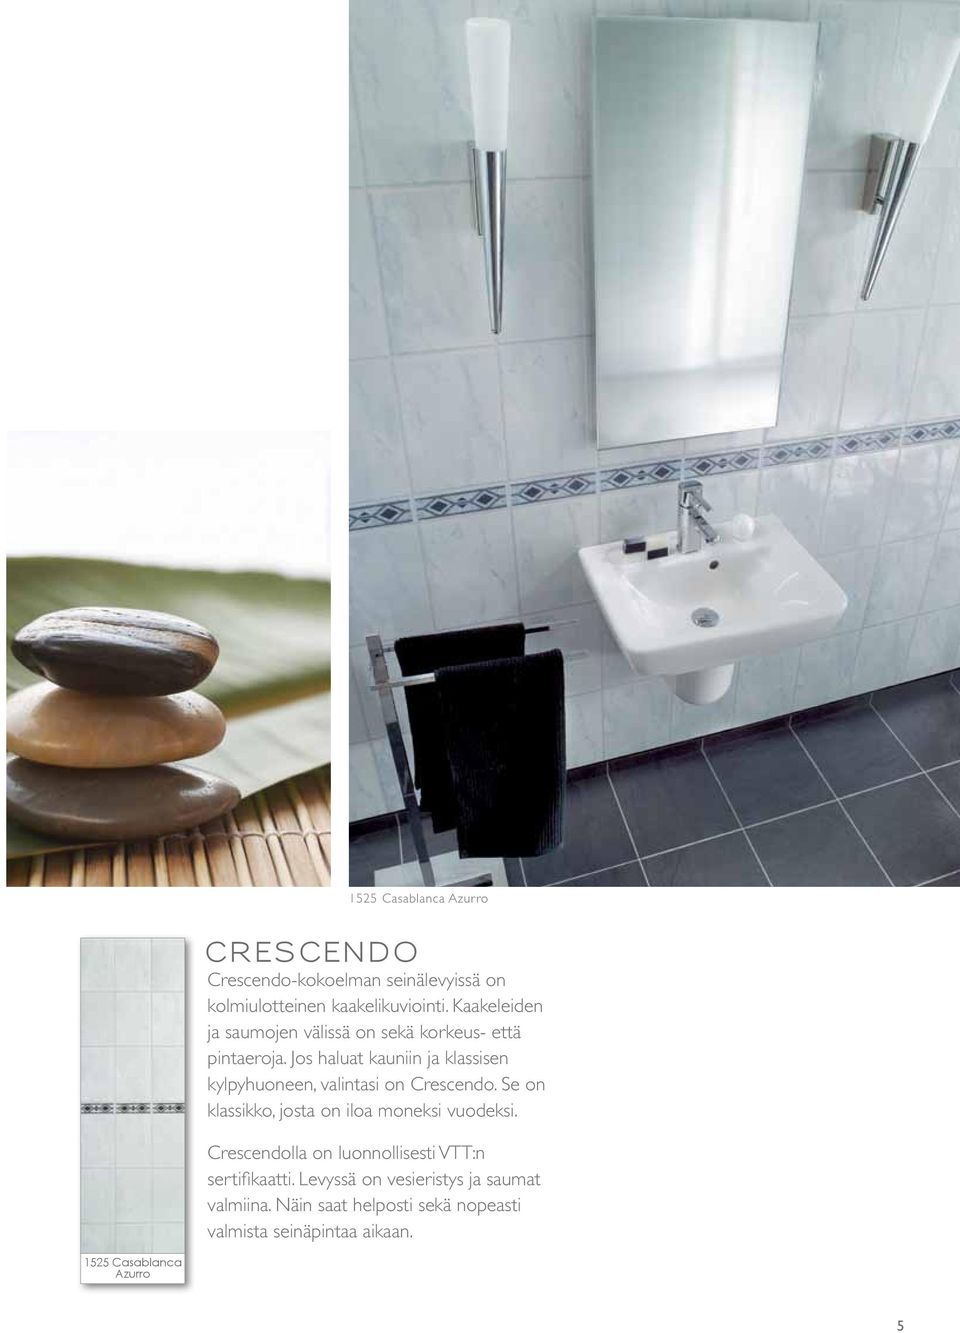 Jos haluat kauniin ja klassisen kylpyhuoneen, valintasi on Crescendo. Se on klassikko, josta on iloa moneksi vuodeksi.